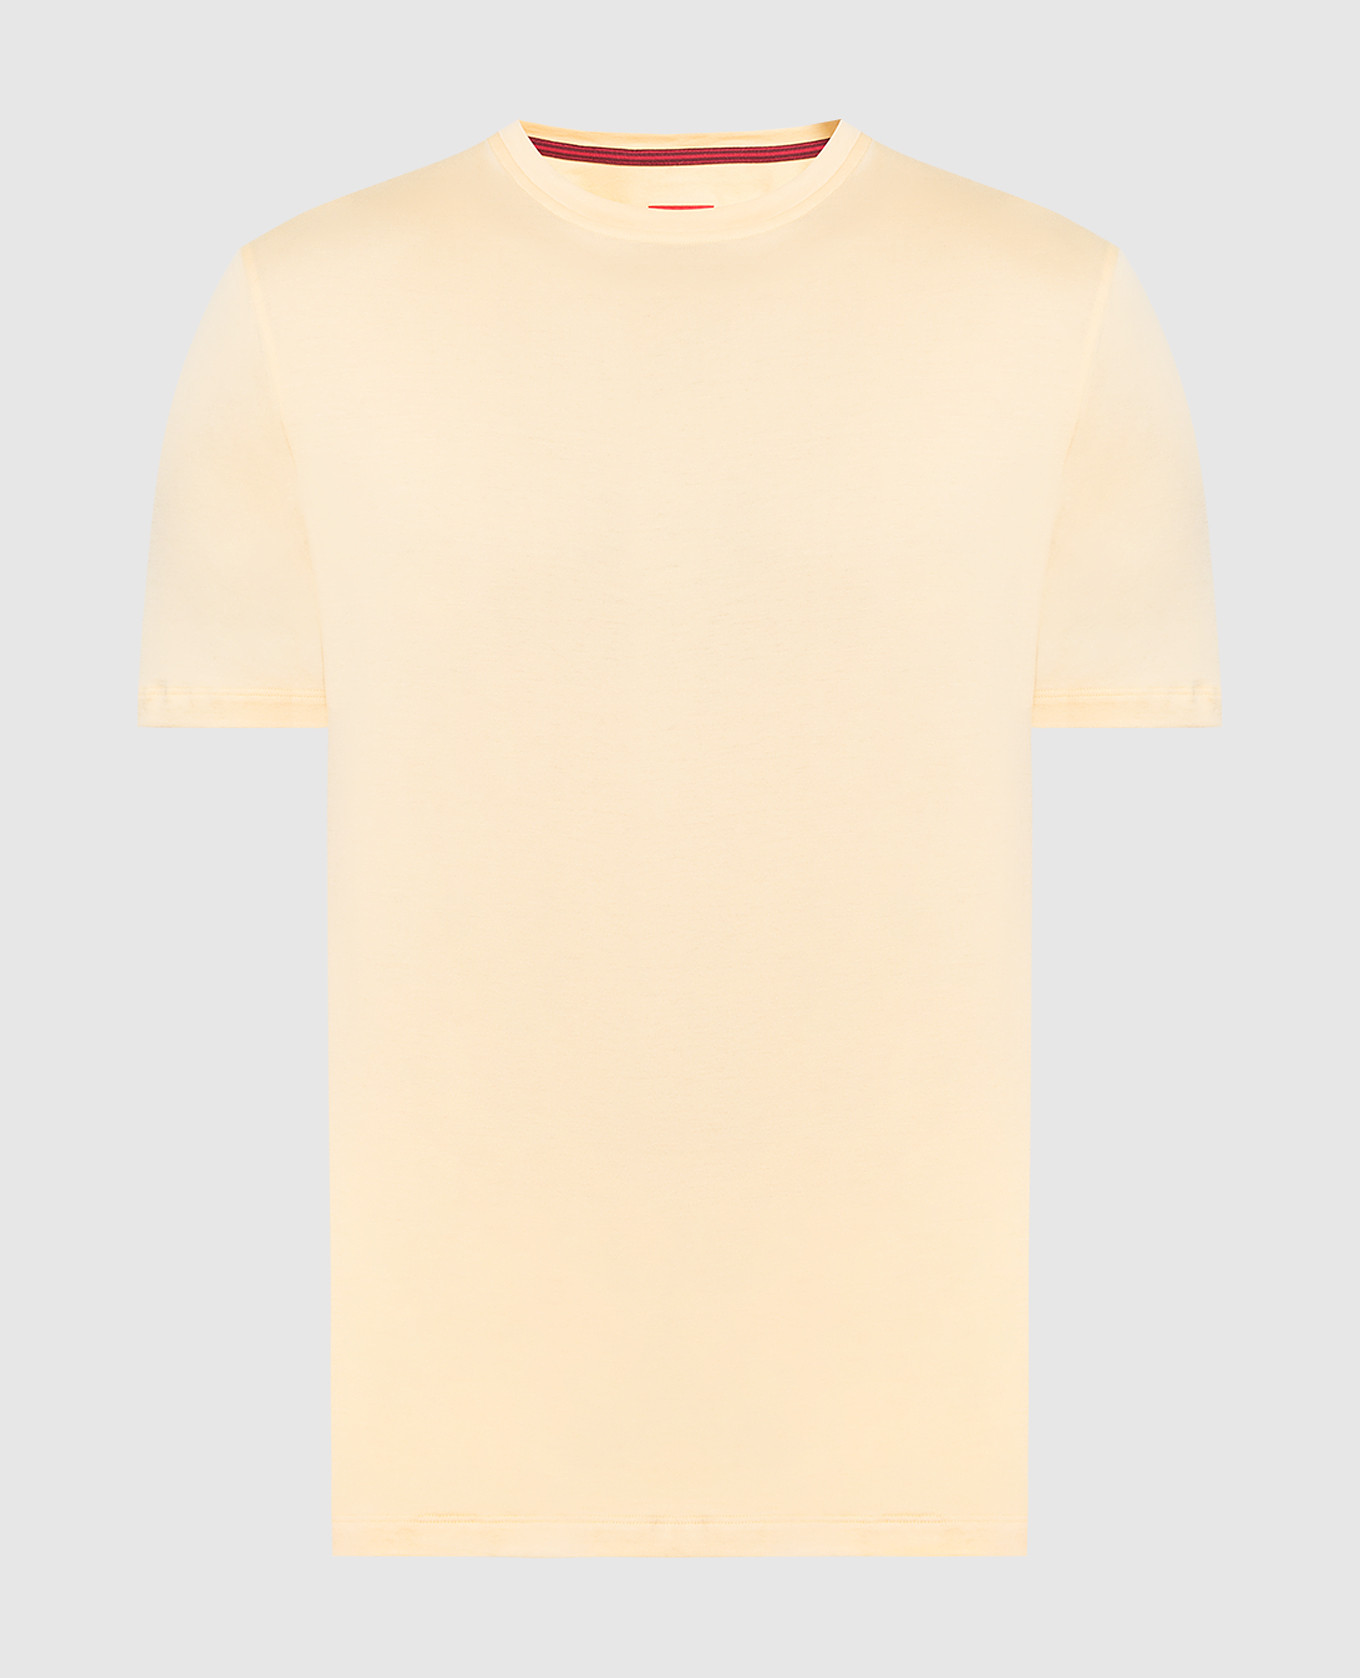 Yellow T-shirt